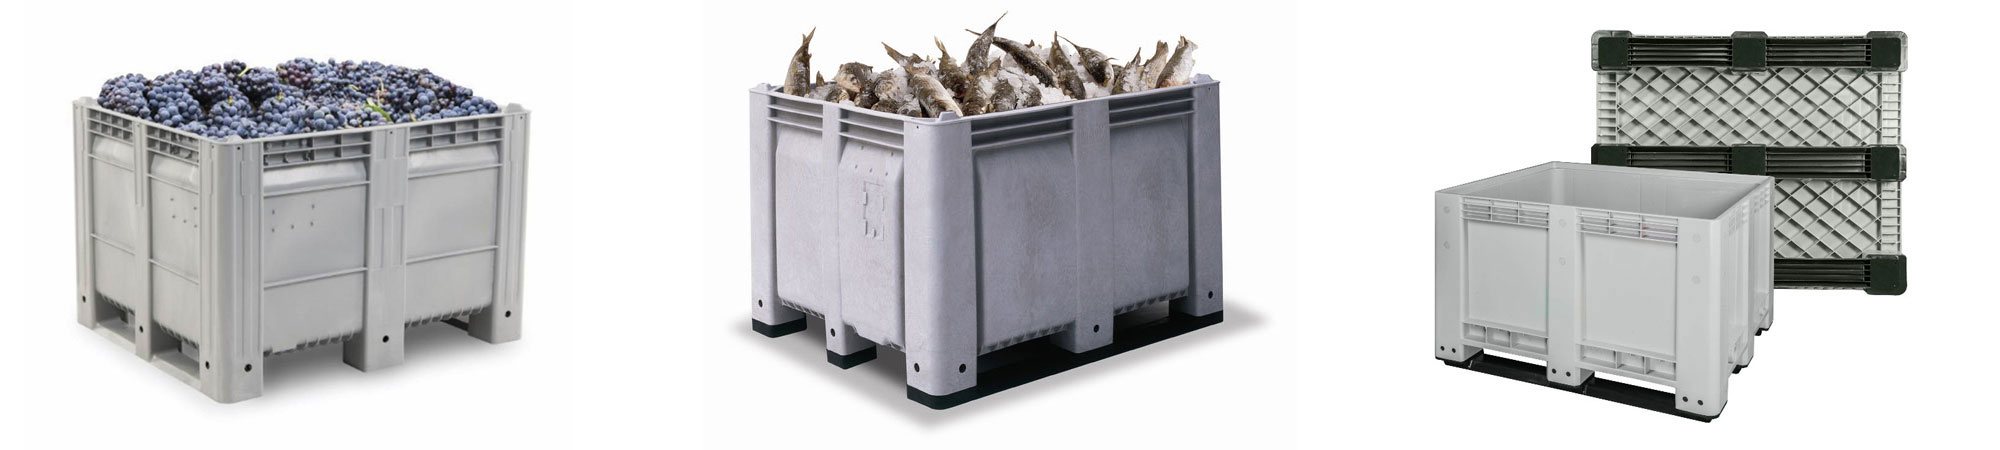 non insulated bins - fish Totes